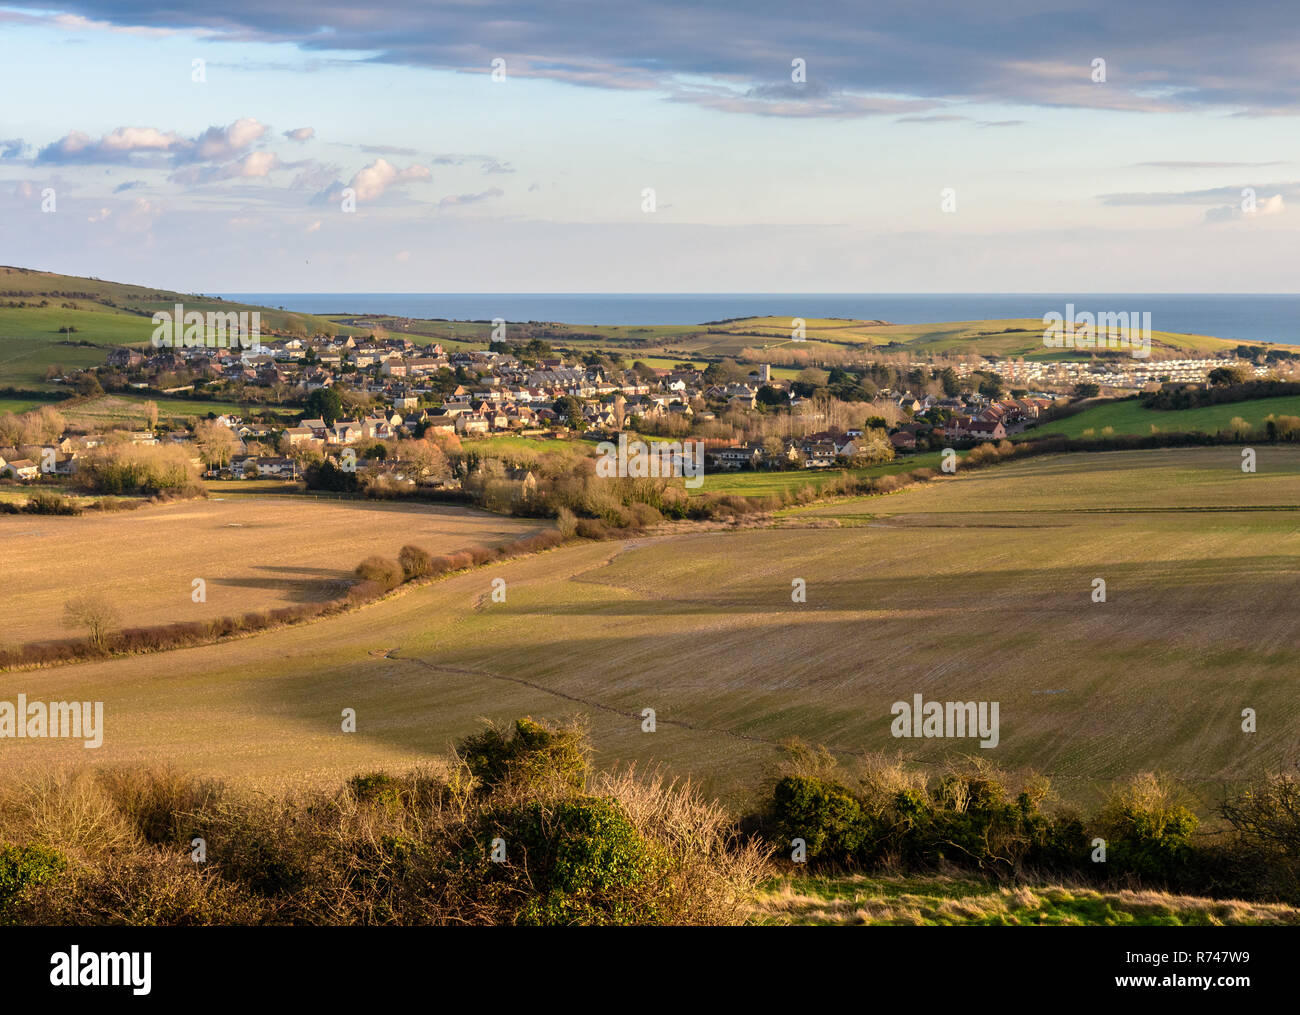 Maisons du village d'Osmington sont nichés parmi les champs cultivés dans une vallée dans le Dorset Downs Hills, à côté de la Manche, la Côte Jurassique. Banque D'Images